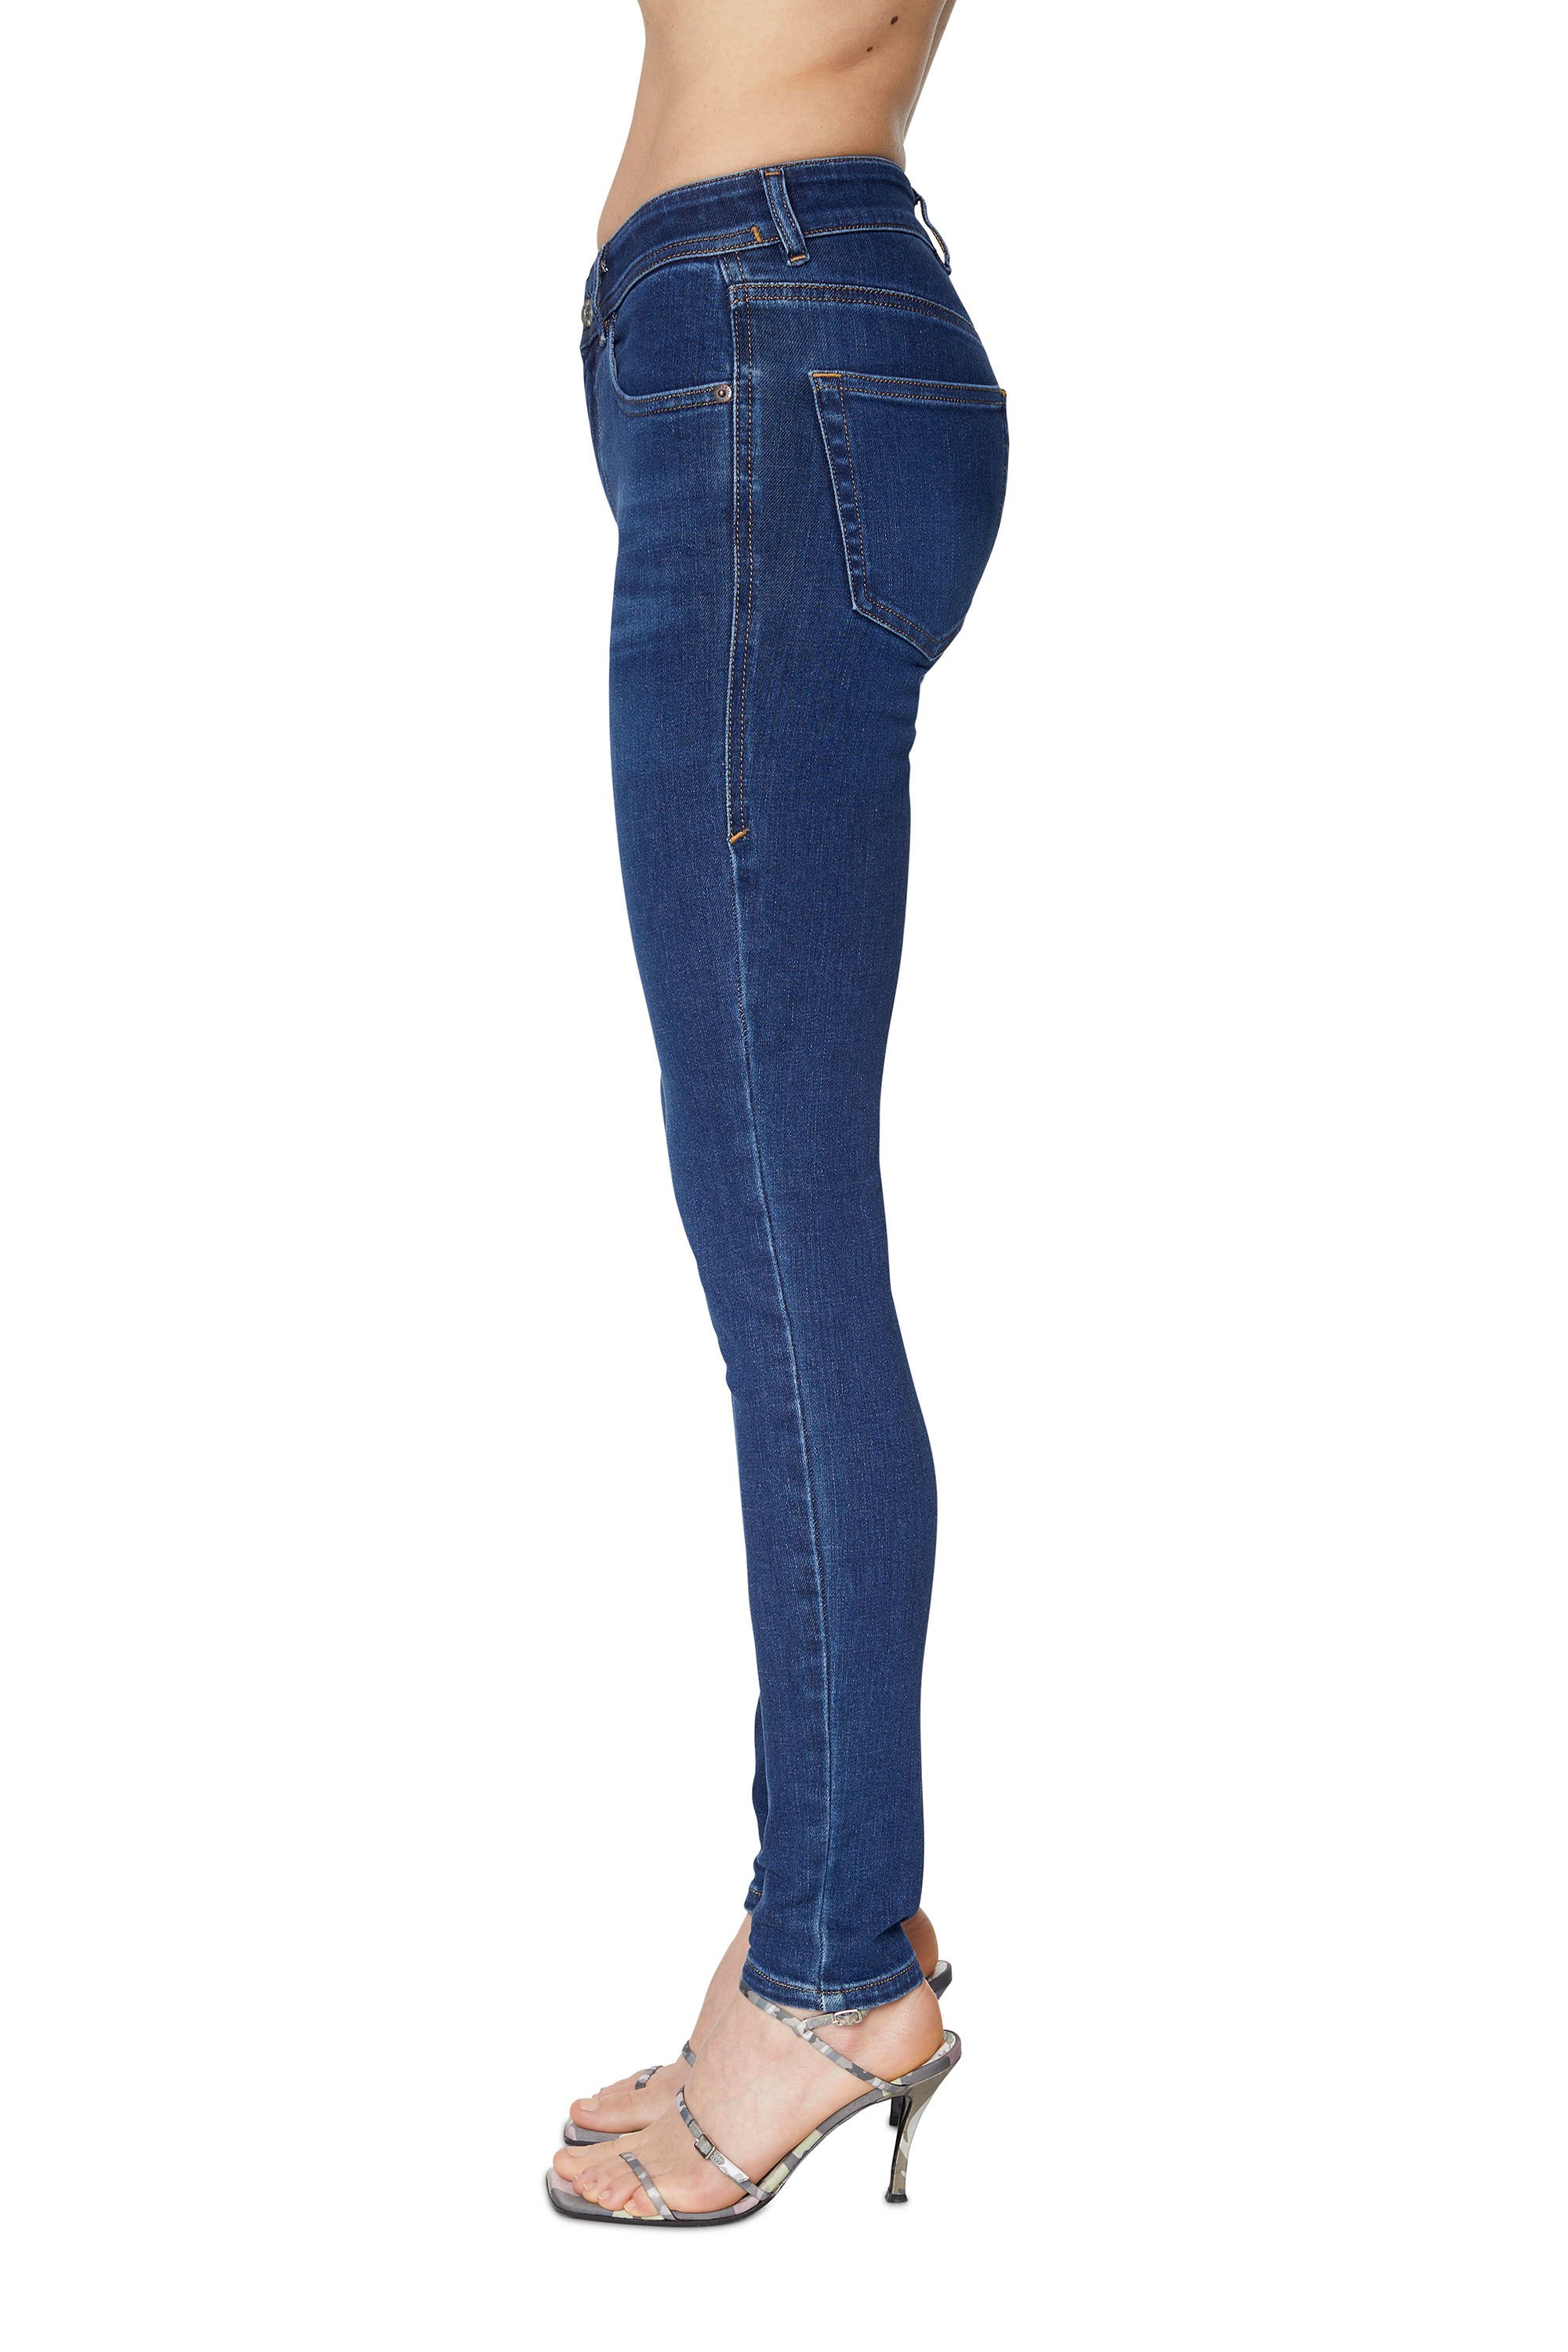 Pantaloni jeansDIESEL in Denim di colore Blu Donna Jeans da Jeans DIESEL 